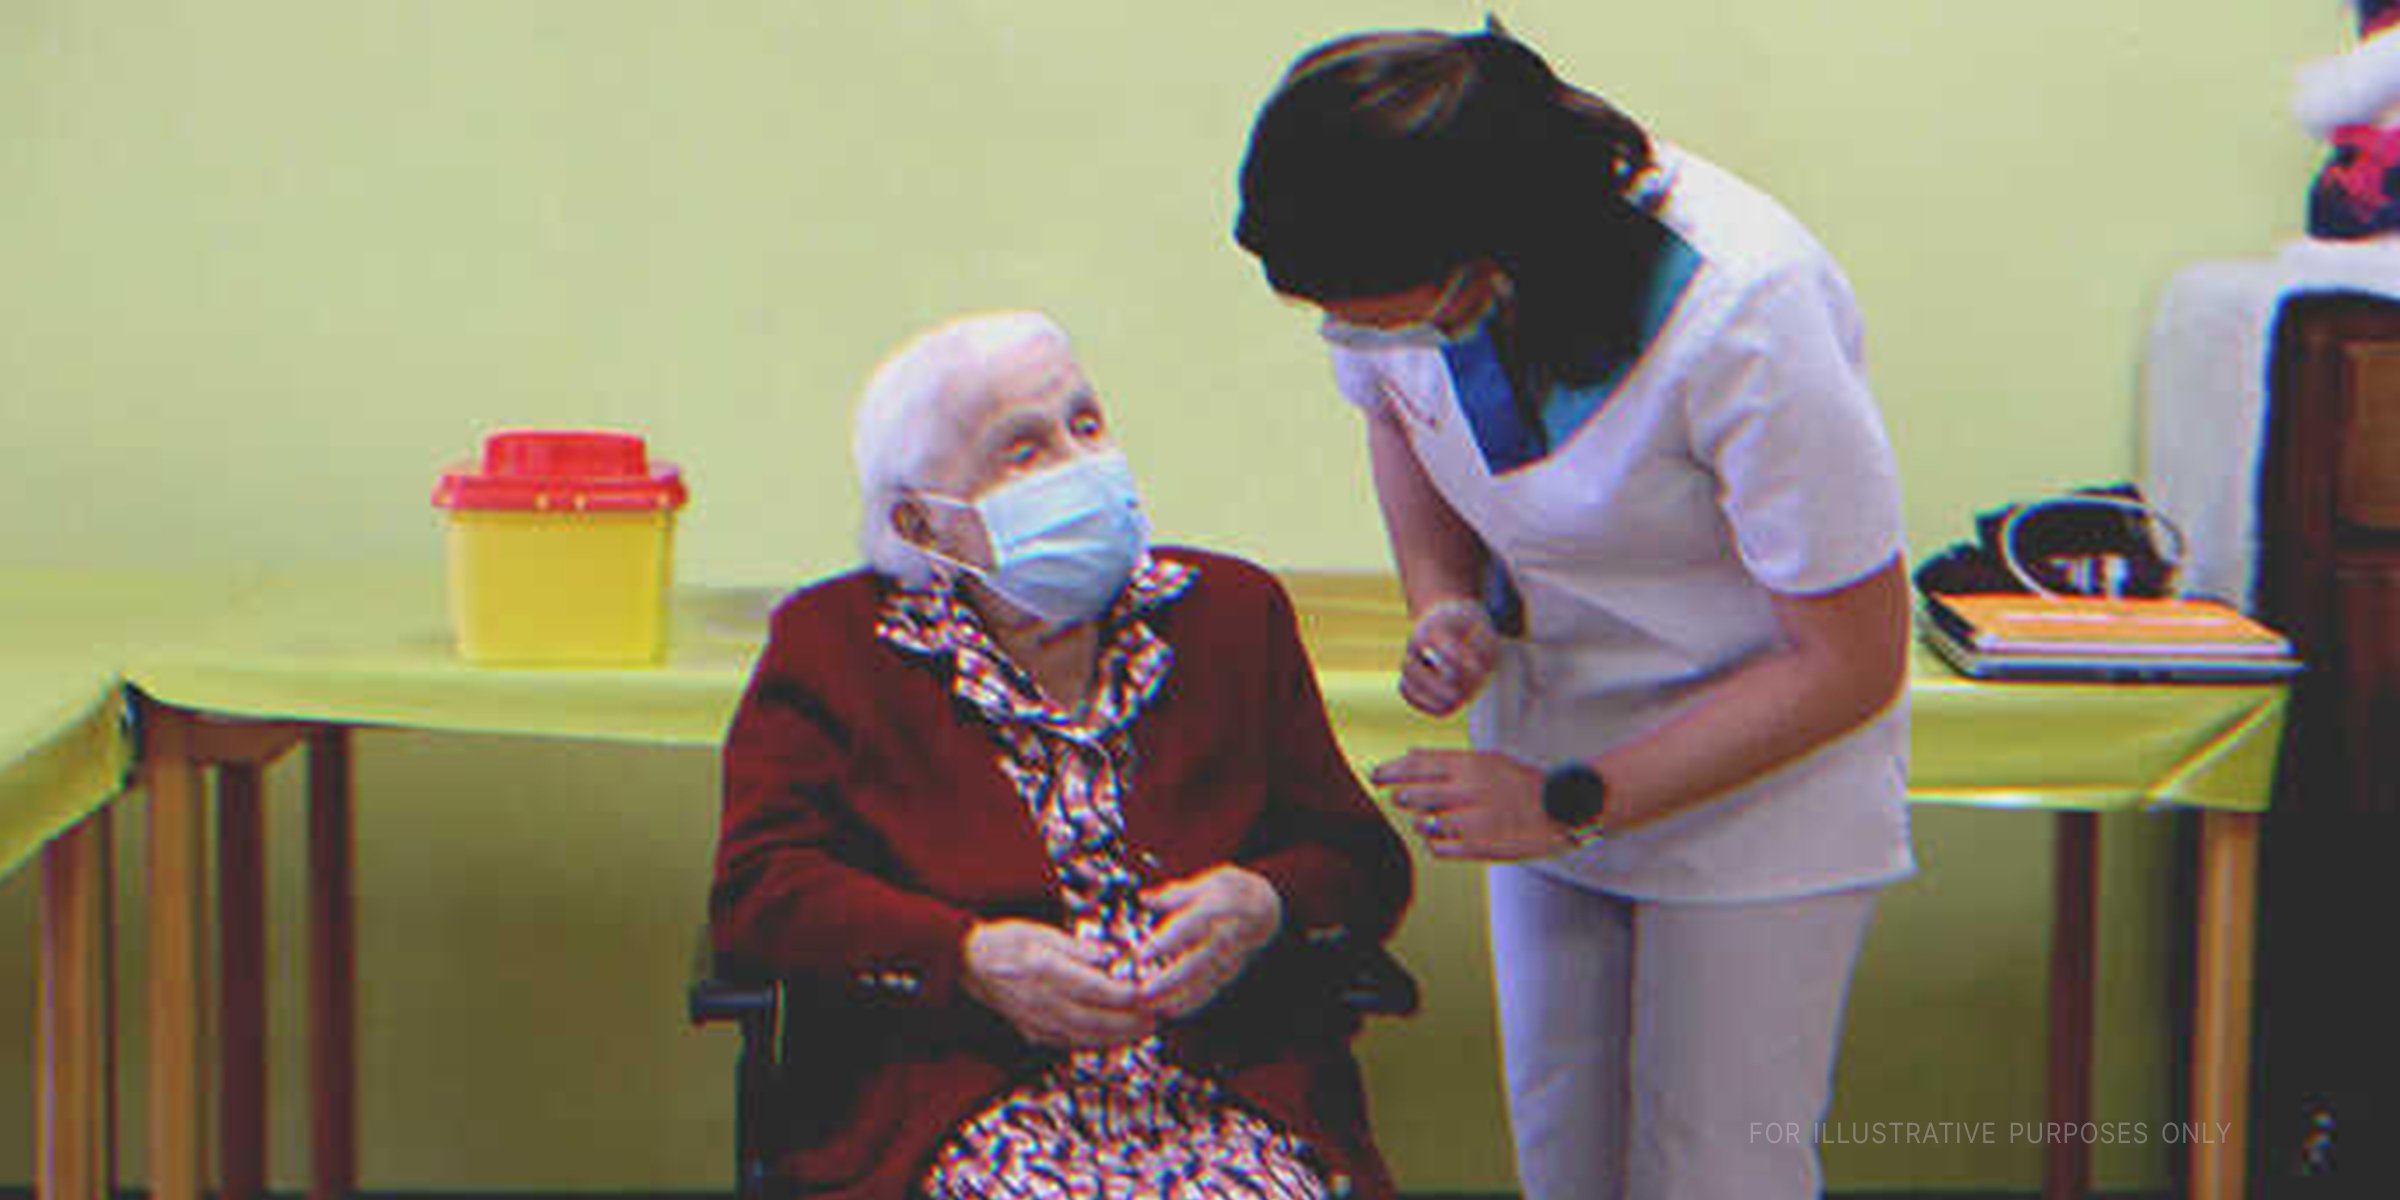 An elderly woman at a nursing home | Source: Shutterstock